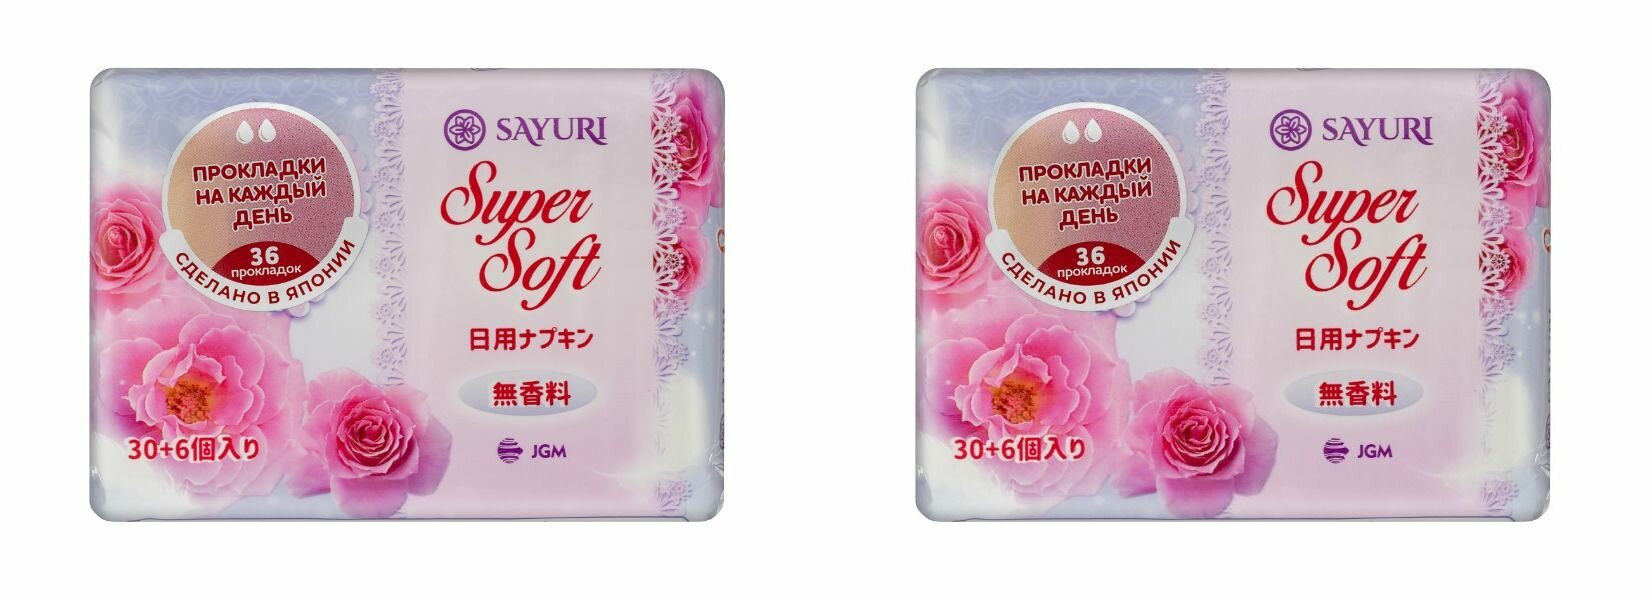 Sayuri Ежедневные гигиенические прокладки Super Soft, 15 см, 36 шт, 2 уп